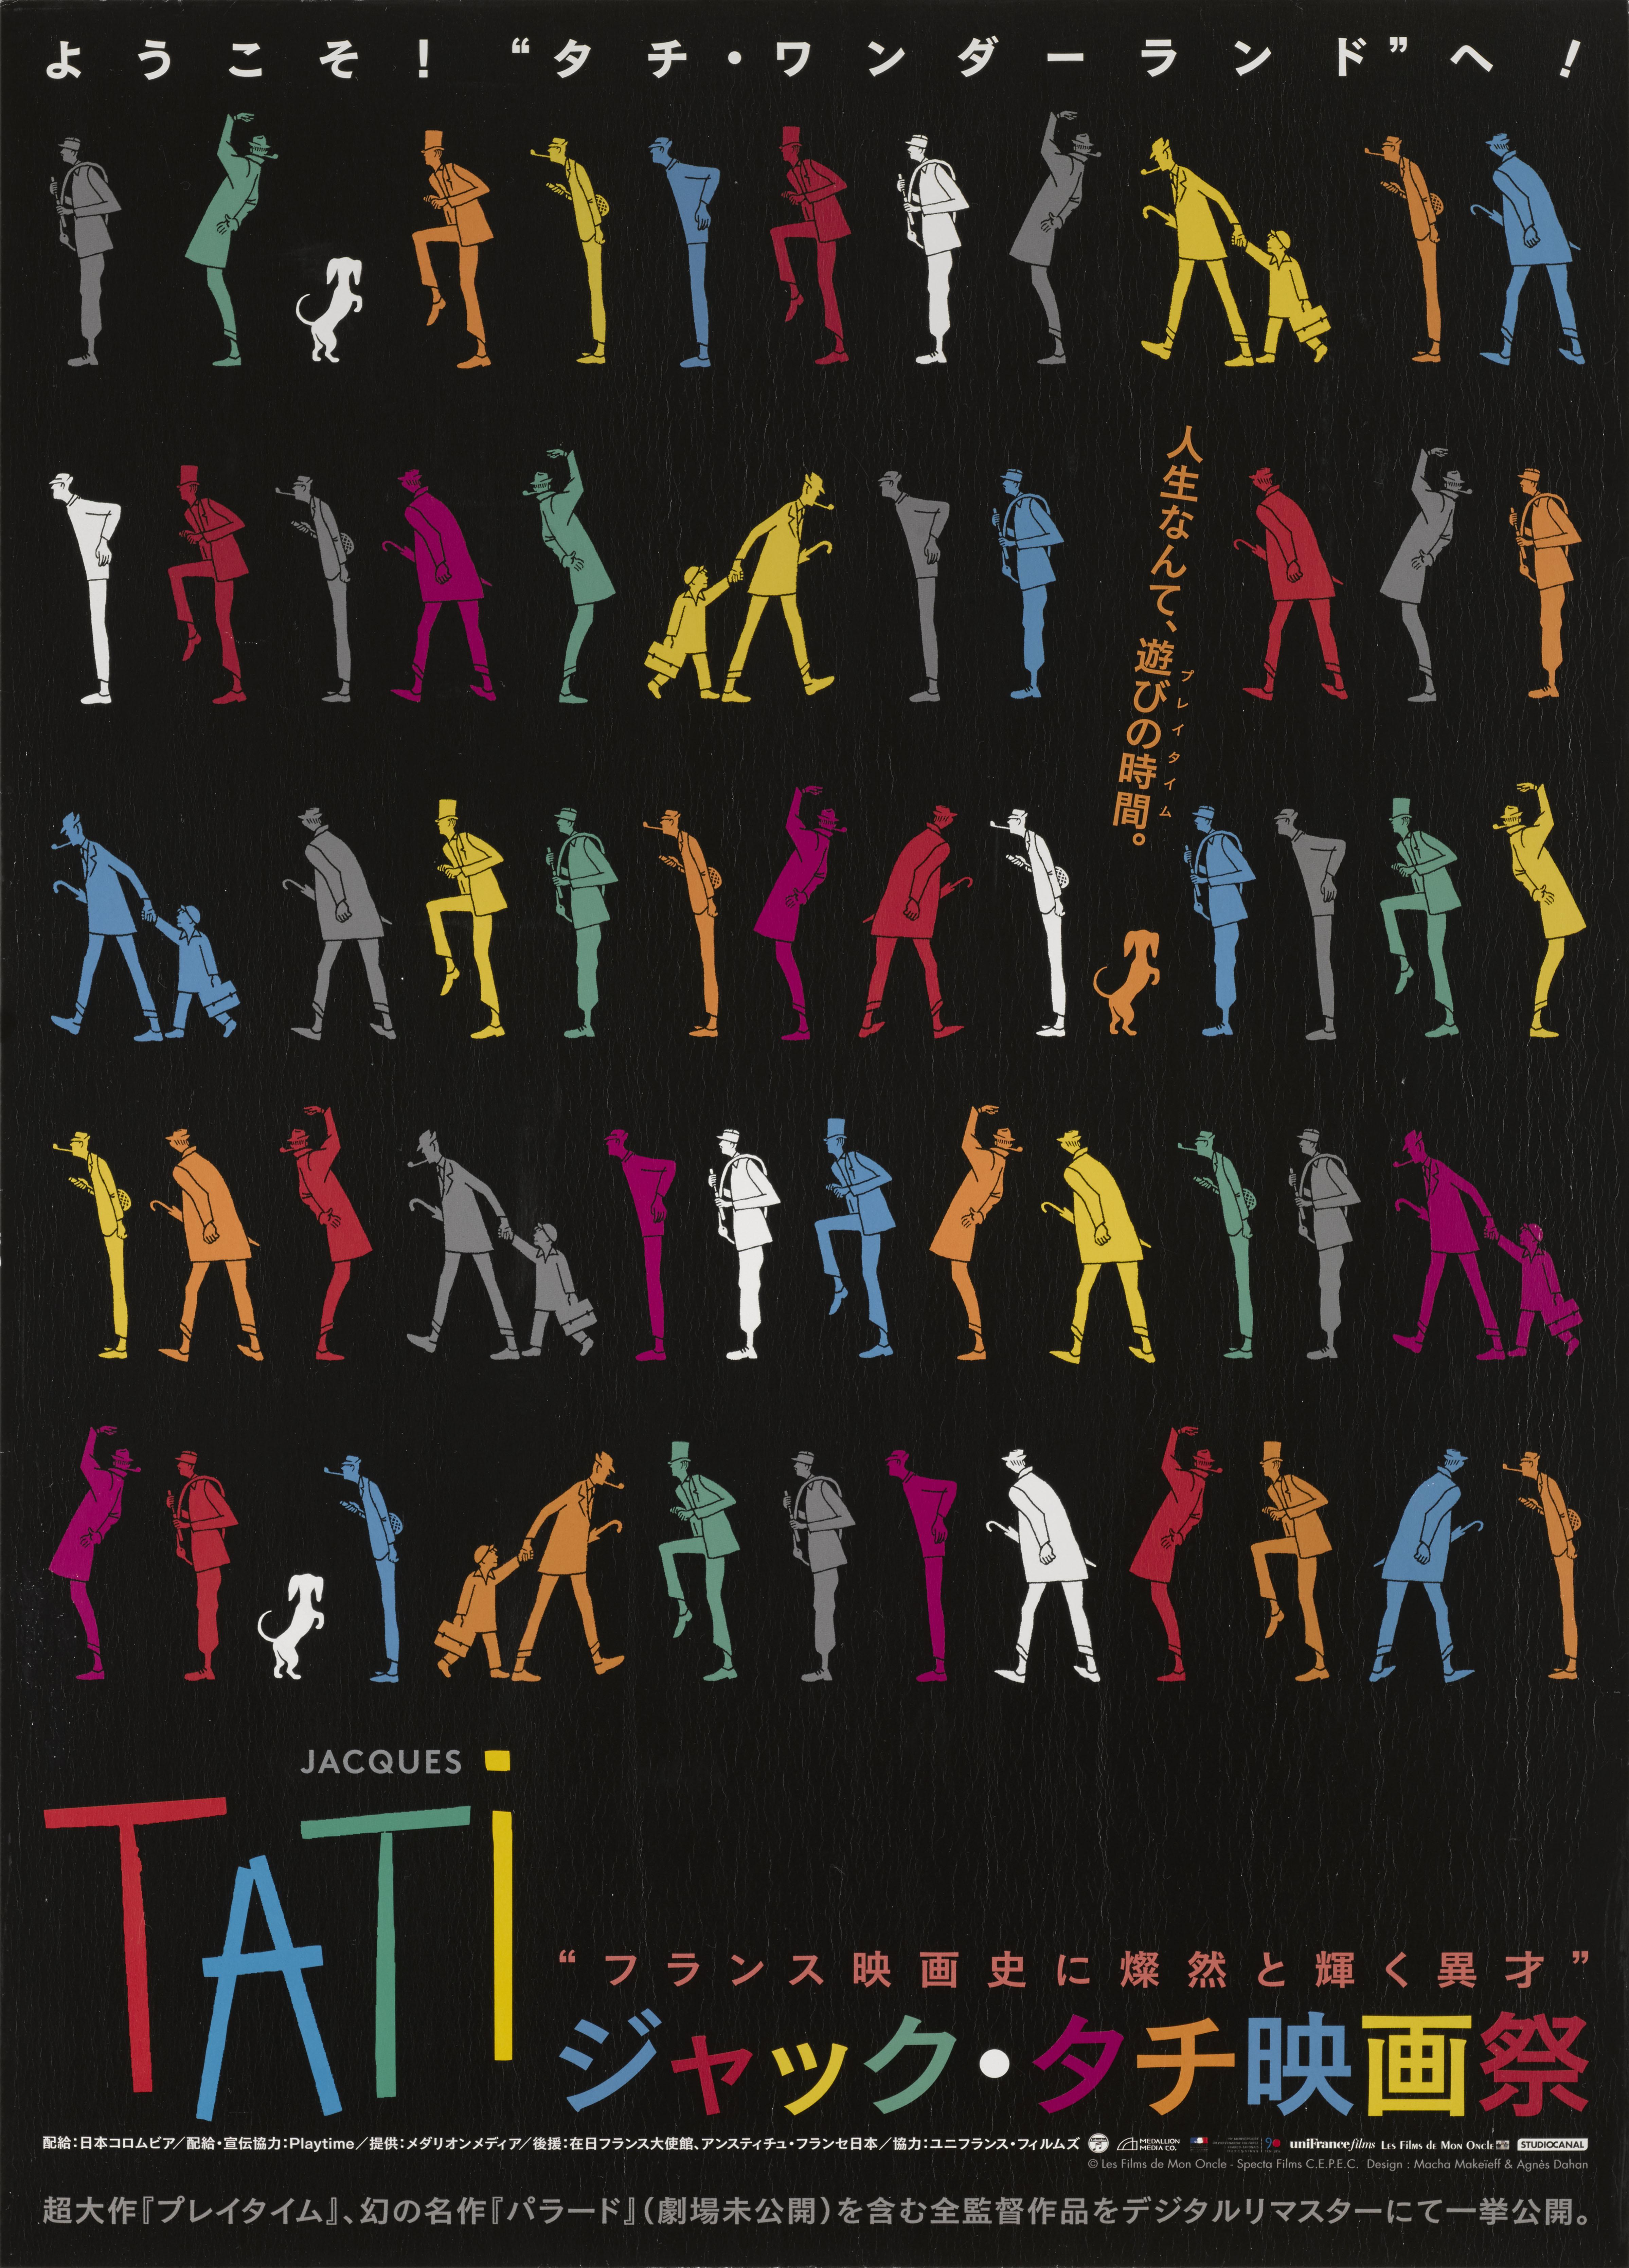 Original japanisches Filmplakat.
Dieses sehr coole Plakat wurde für ein Kurzfilmfestival von Jacques Tati in den 2000er Jahren entworfen.
Das Plakat ist entfaltet und Erhaltung Papier zurück und in ausgezeichnetem Zustand mit der Farbe noch sehr